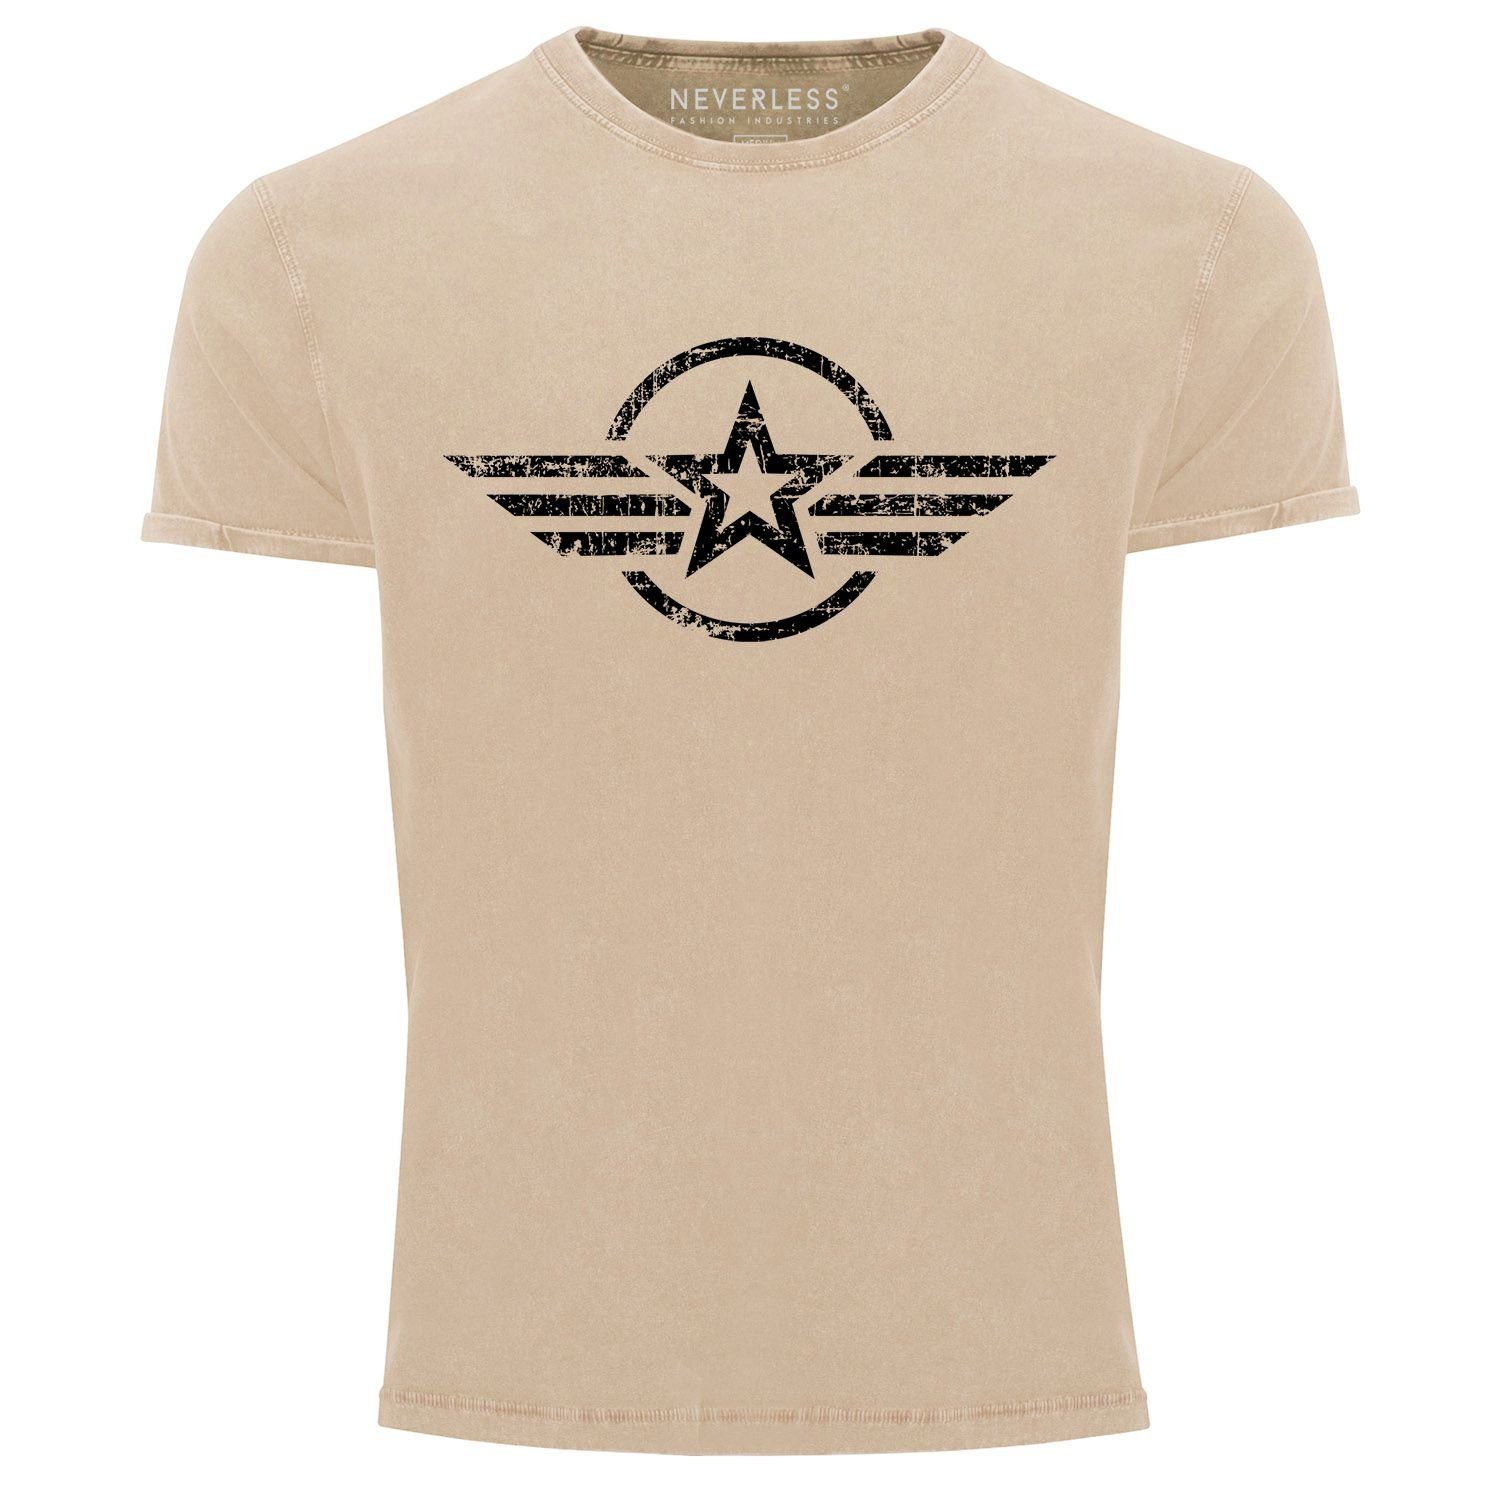 Neverless Print-Shirt Herren Vintage Shirt Airforce Stern Army Military Aufdruck Printshirt T-Shirt Aufdruck Used Look Slim Fit Neverless® mit Print natur